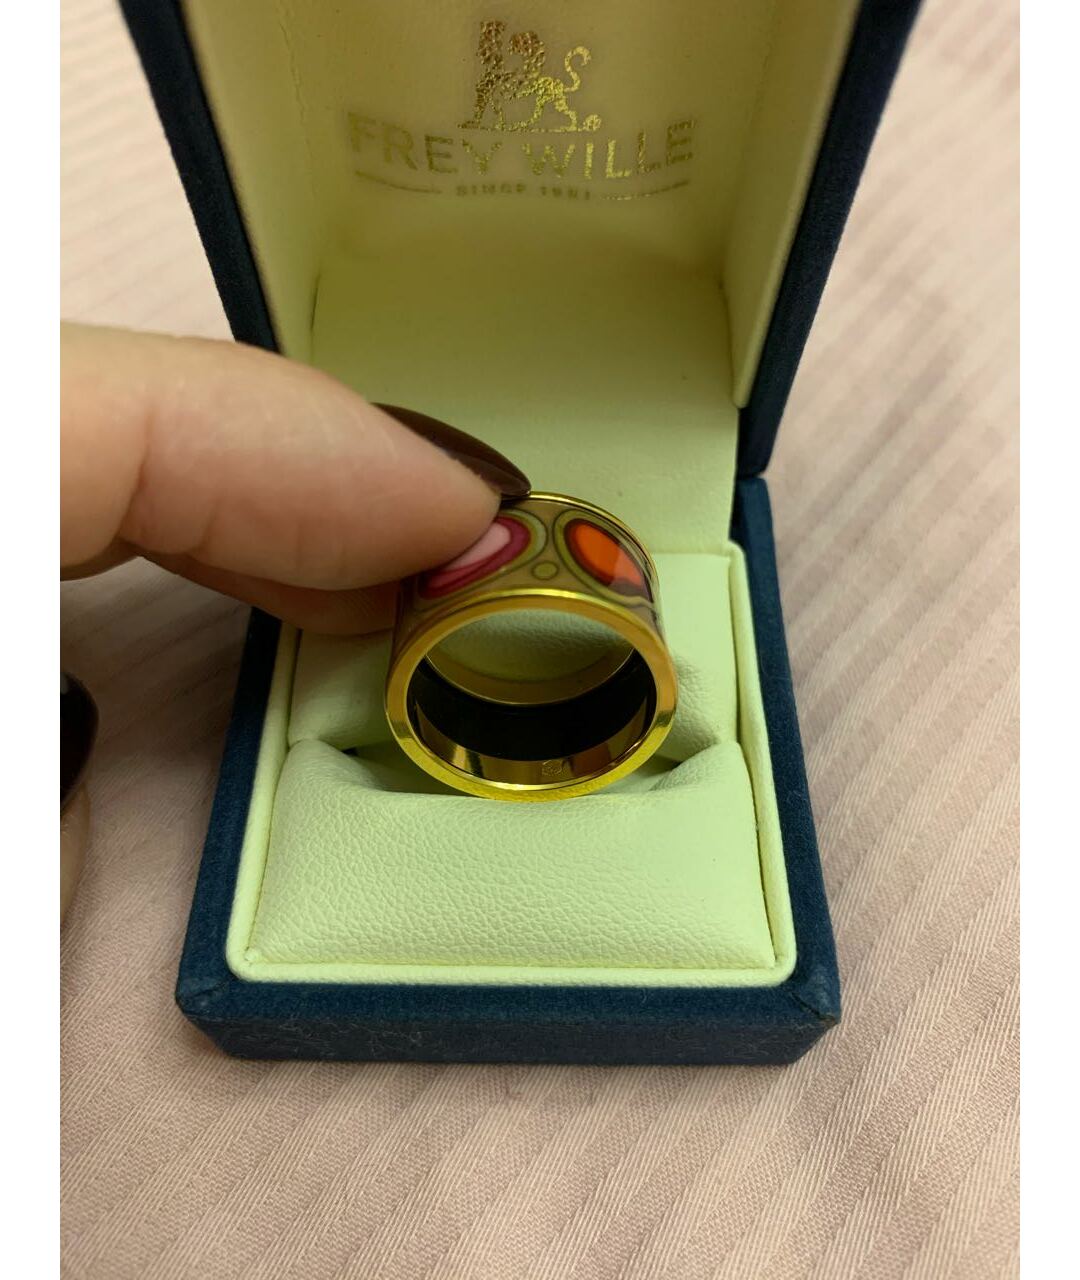 Frey Wille Мульти кольцо, фото 3